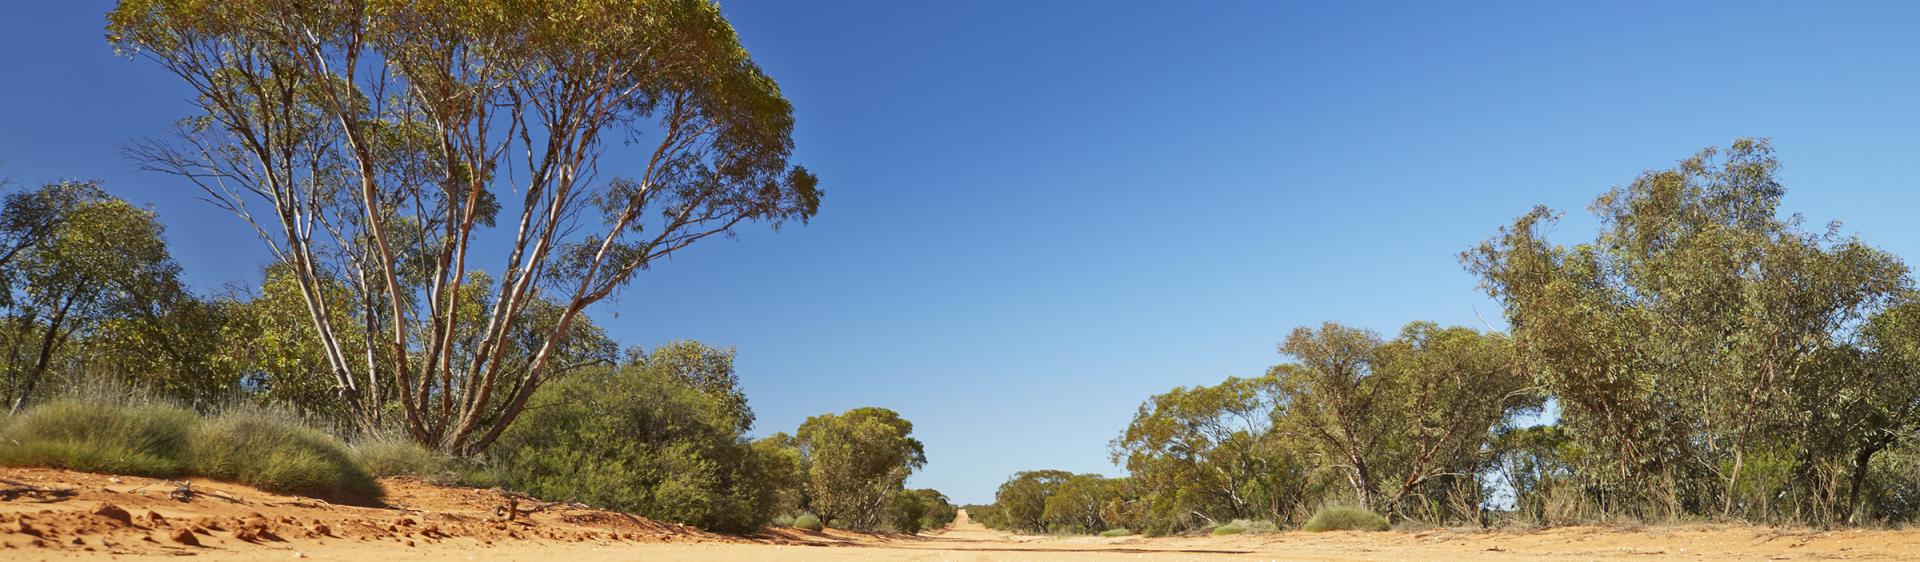 布羅肯山 (Broken Hill）蒙哥國家公園（Mungo National Park）小徑